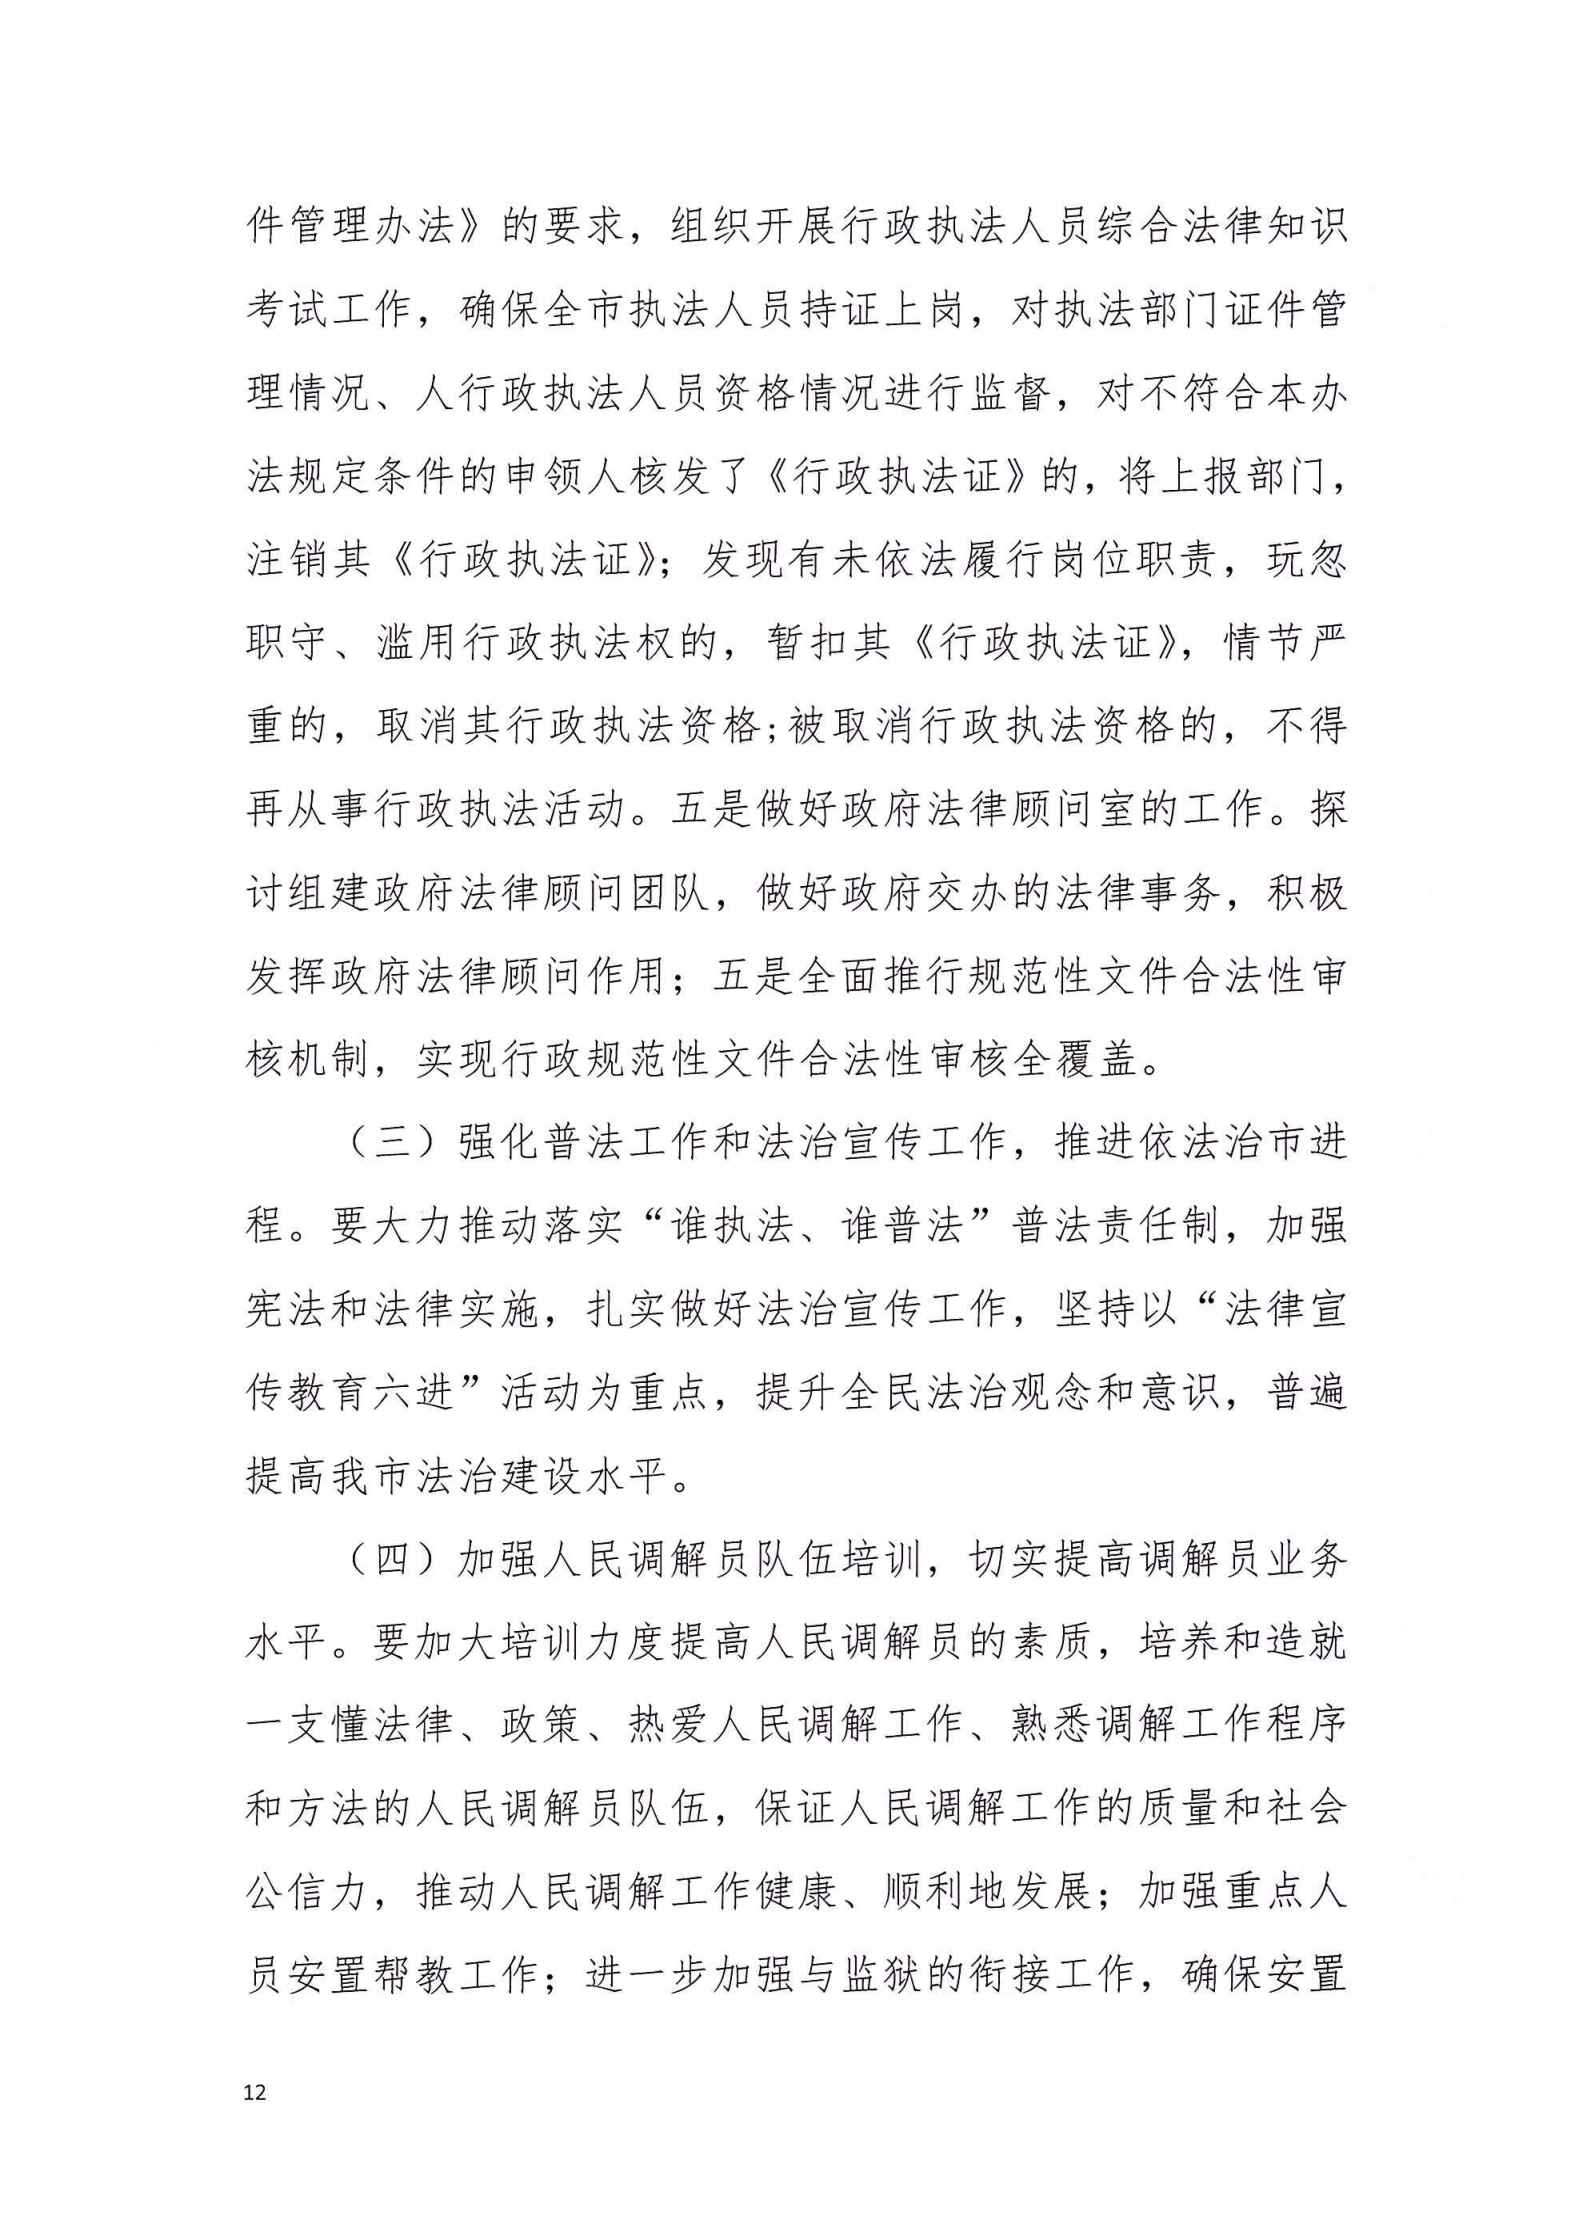 陆丰市司法局2020年法治政府建设年度报告_11.png